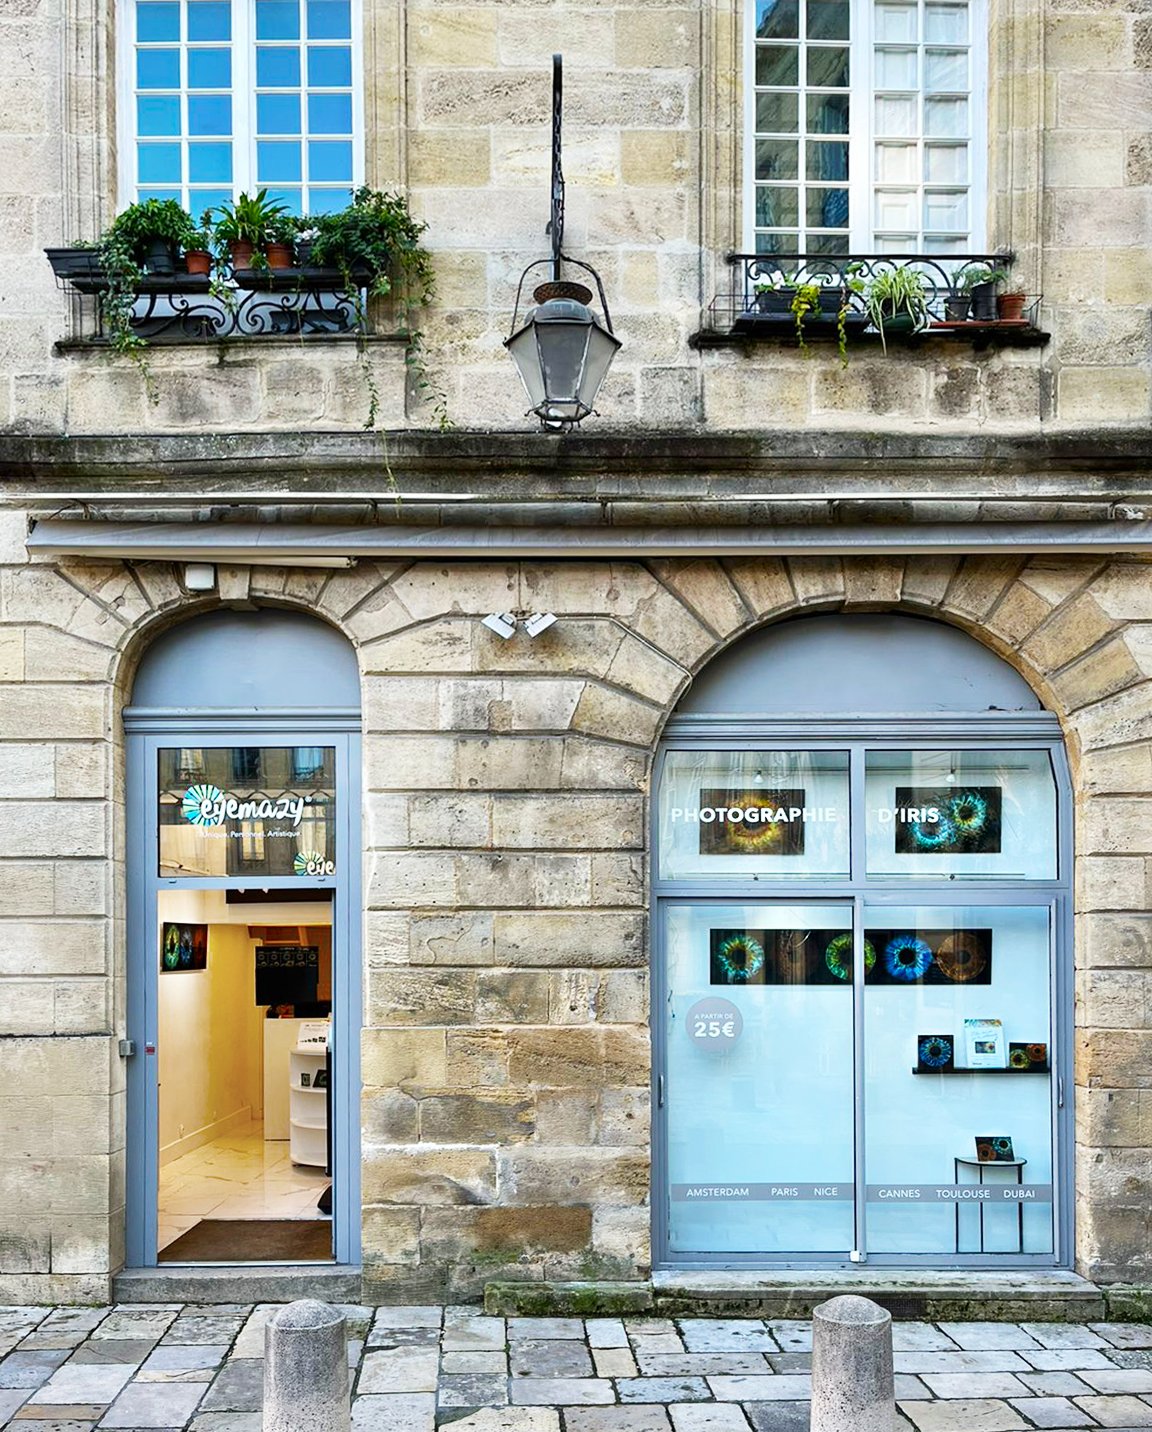 Entrance of Eyemazy store in Bordeaux